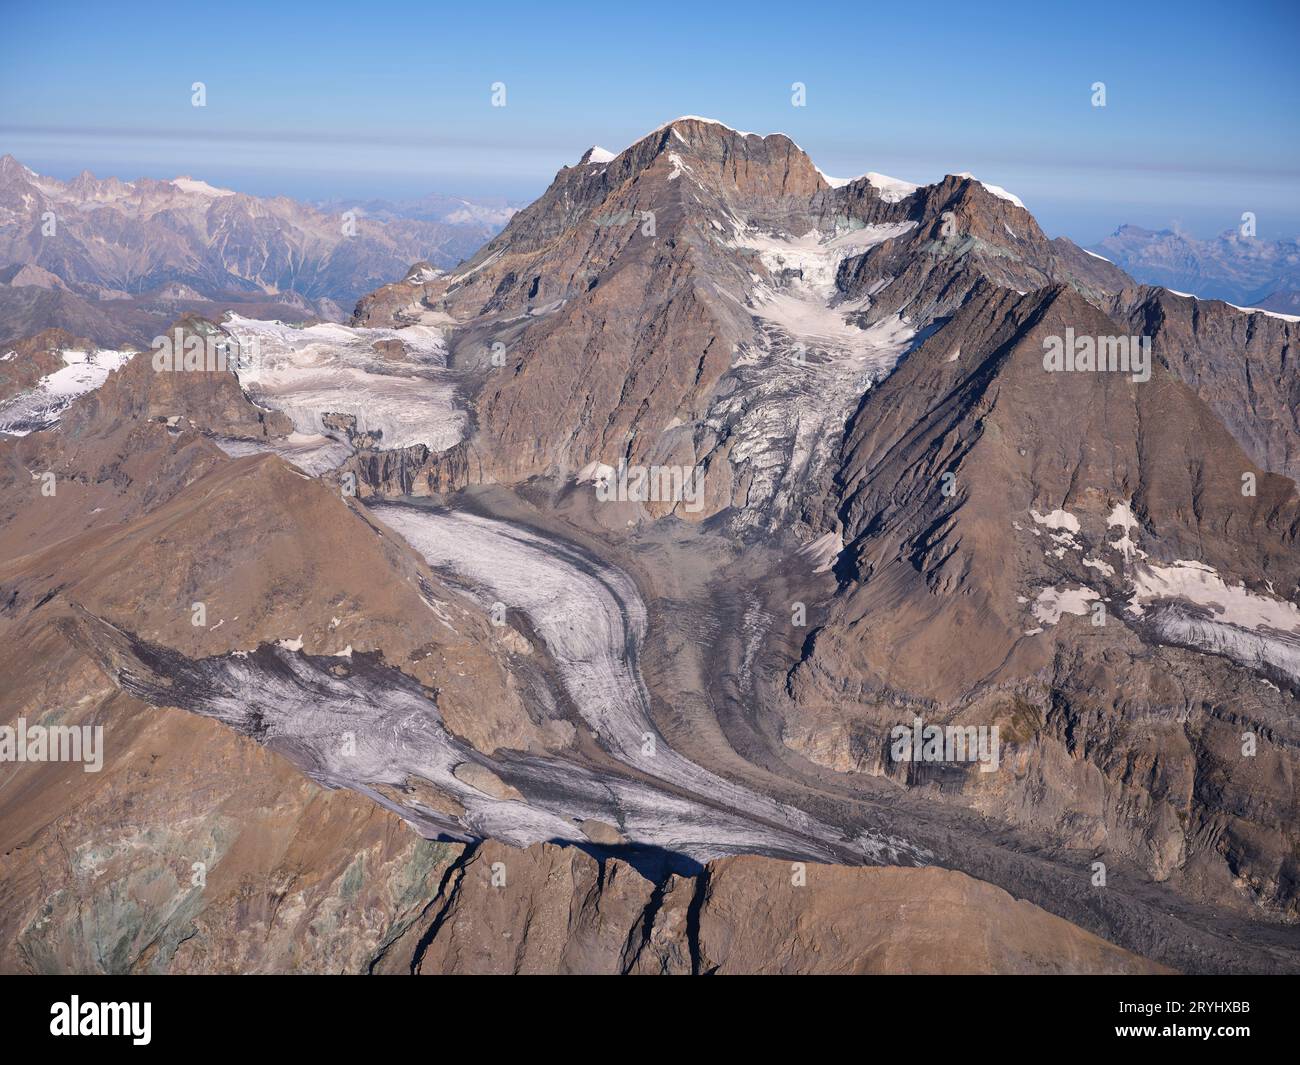 VUE AÉRIENNE. Massif du Grand Combin (altitude : 4314 mètres à Combin de Grafeneire). Valais, Suisse. Banque D'Images